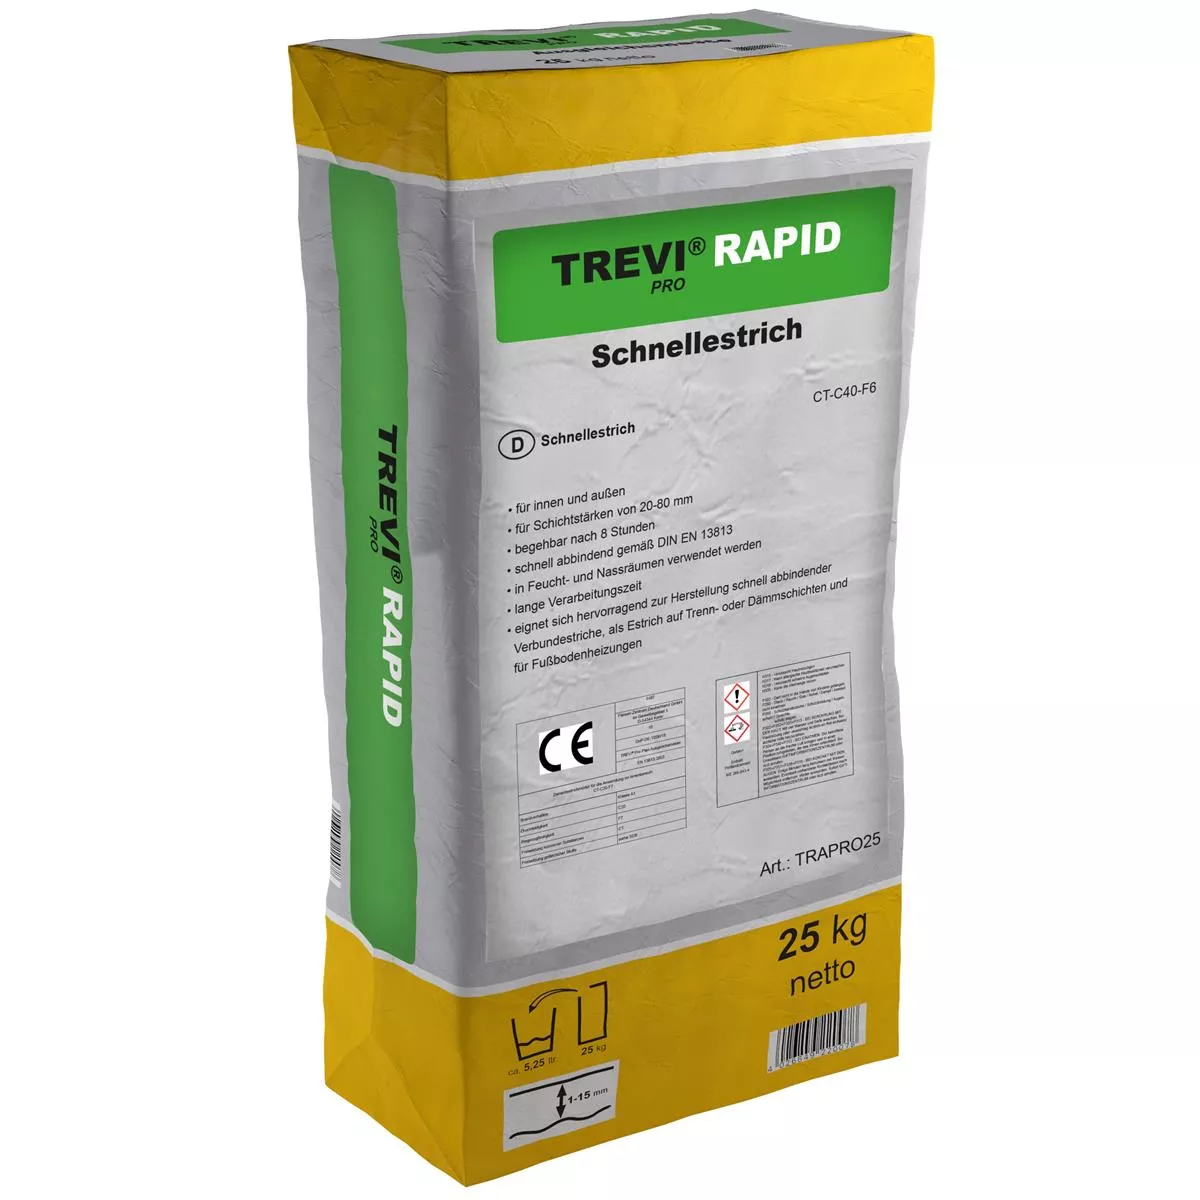 Τσιμεντοκονία ταχείας πήξης Trevi Pro Rapid (25KG)